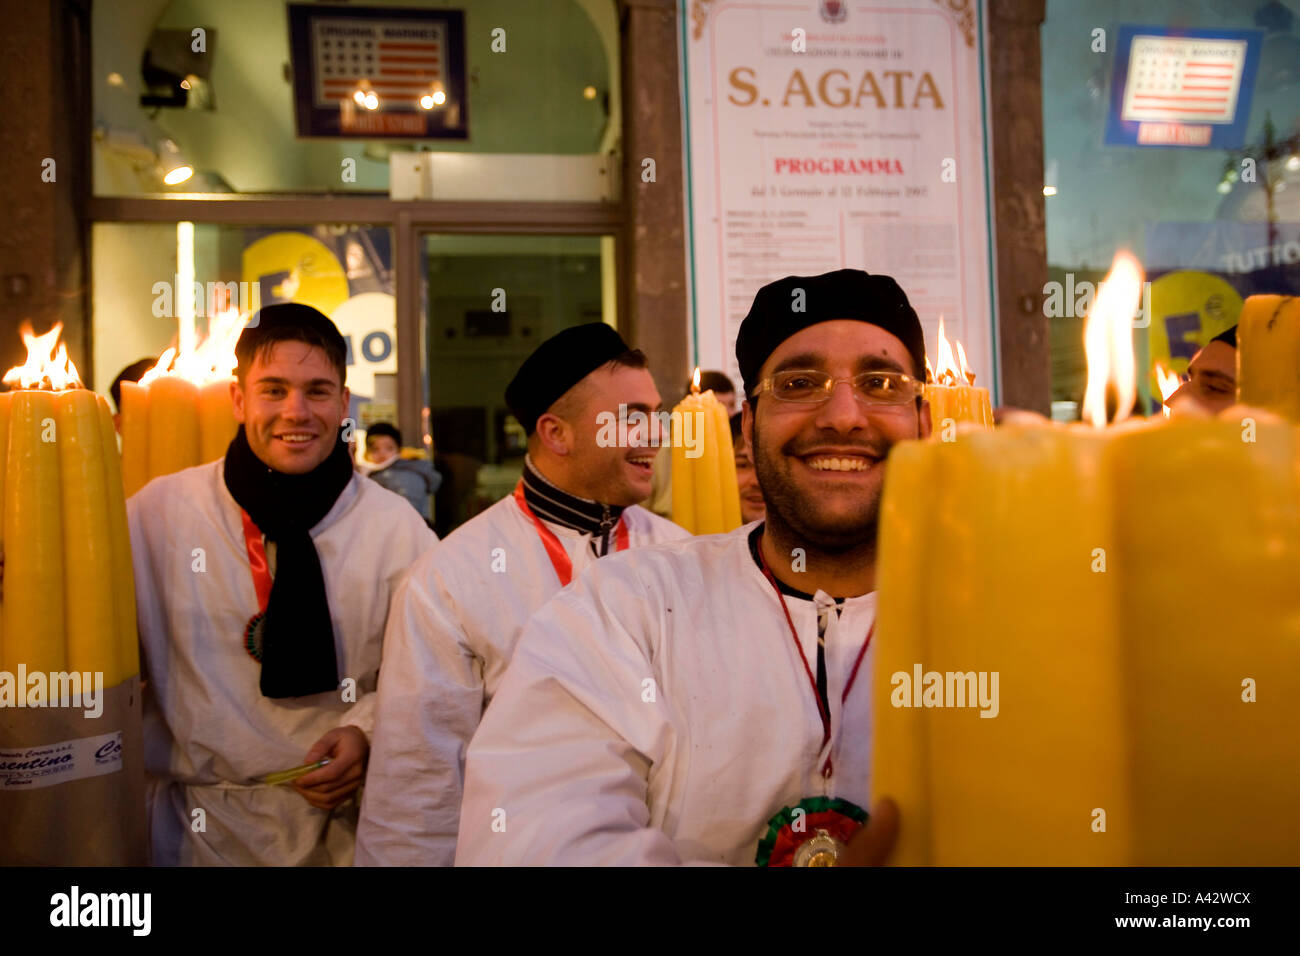 Festa per S AGATA Santo protettore di Catania Sicilia Italia Foto Stock